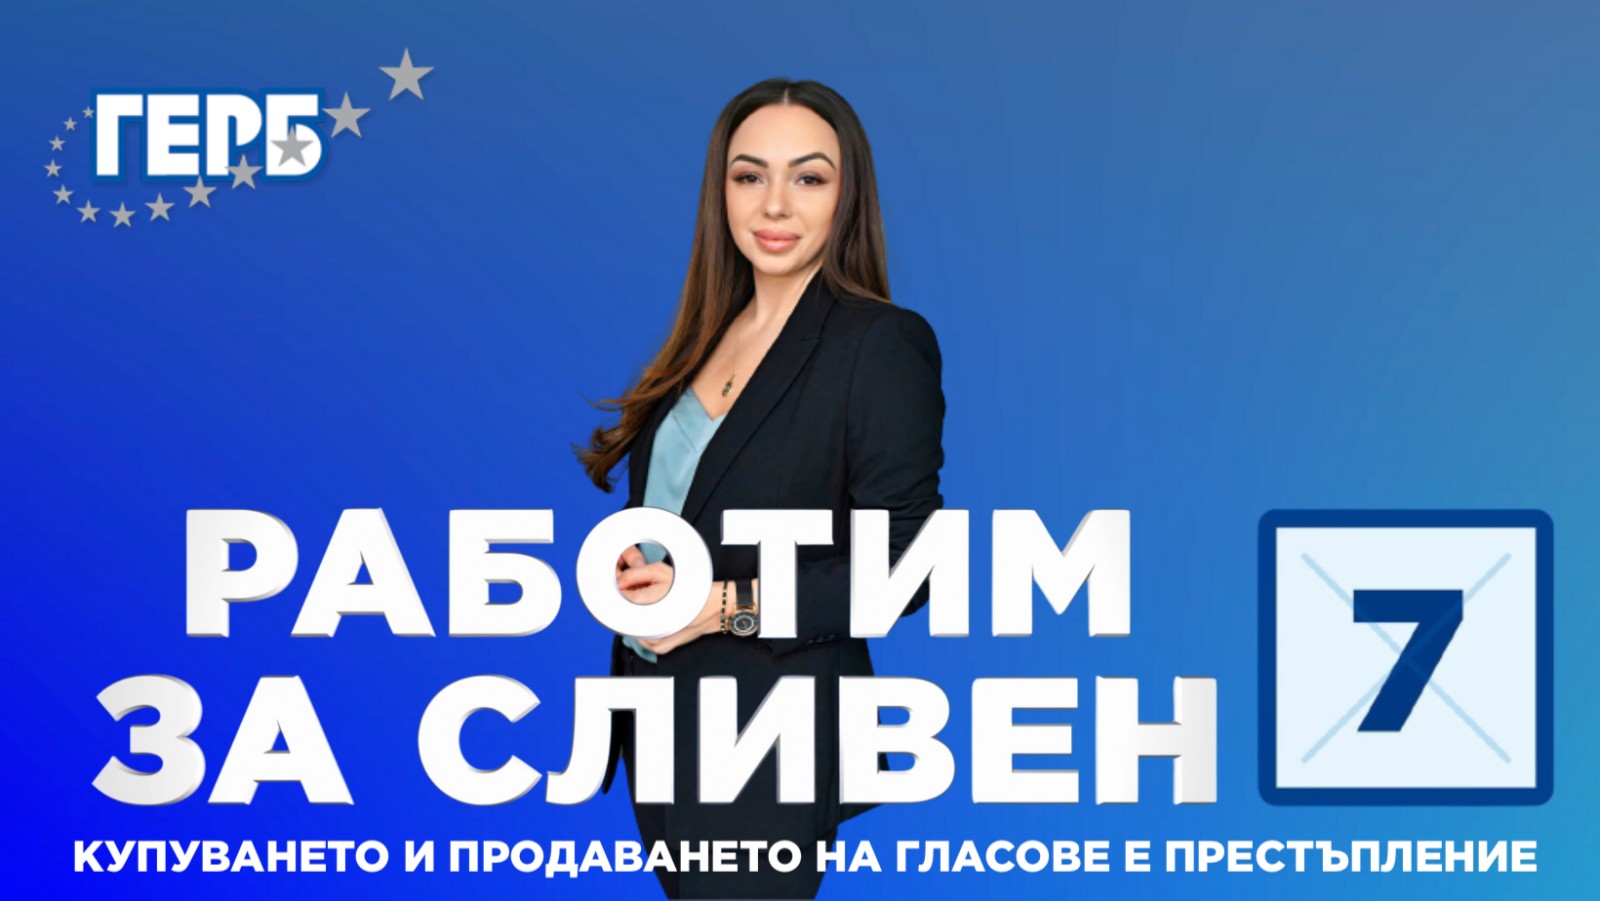 Славена Шейтанова е кандидат за общински съветник от листата на